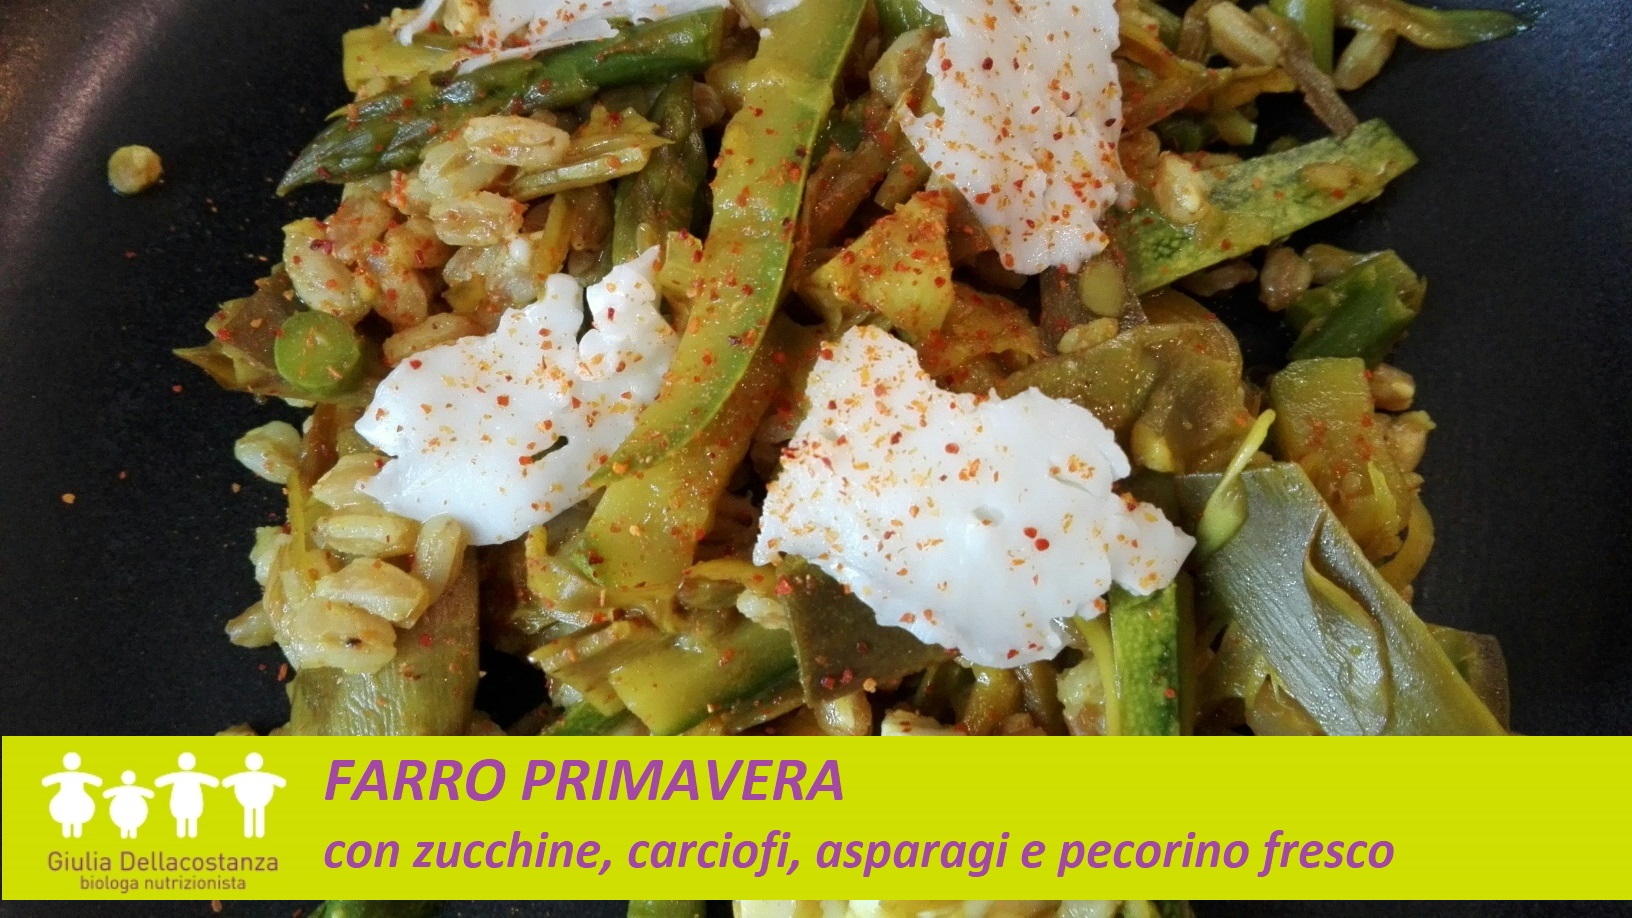 Piatto completo a base di farro perlato con zucchine, asparagi, carciofi e pecorino fresco.